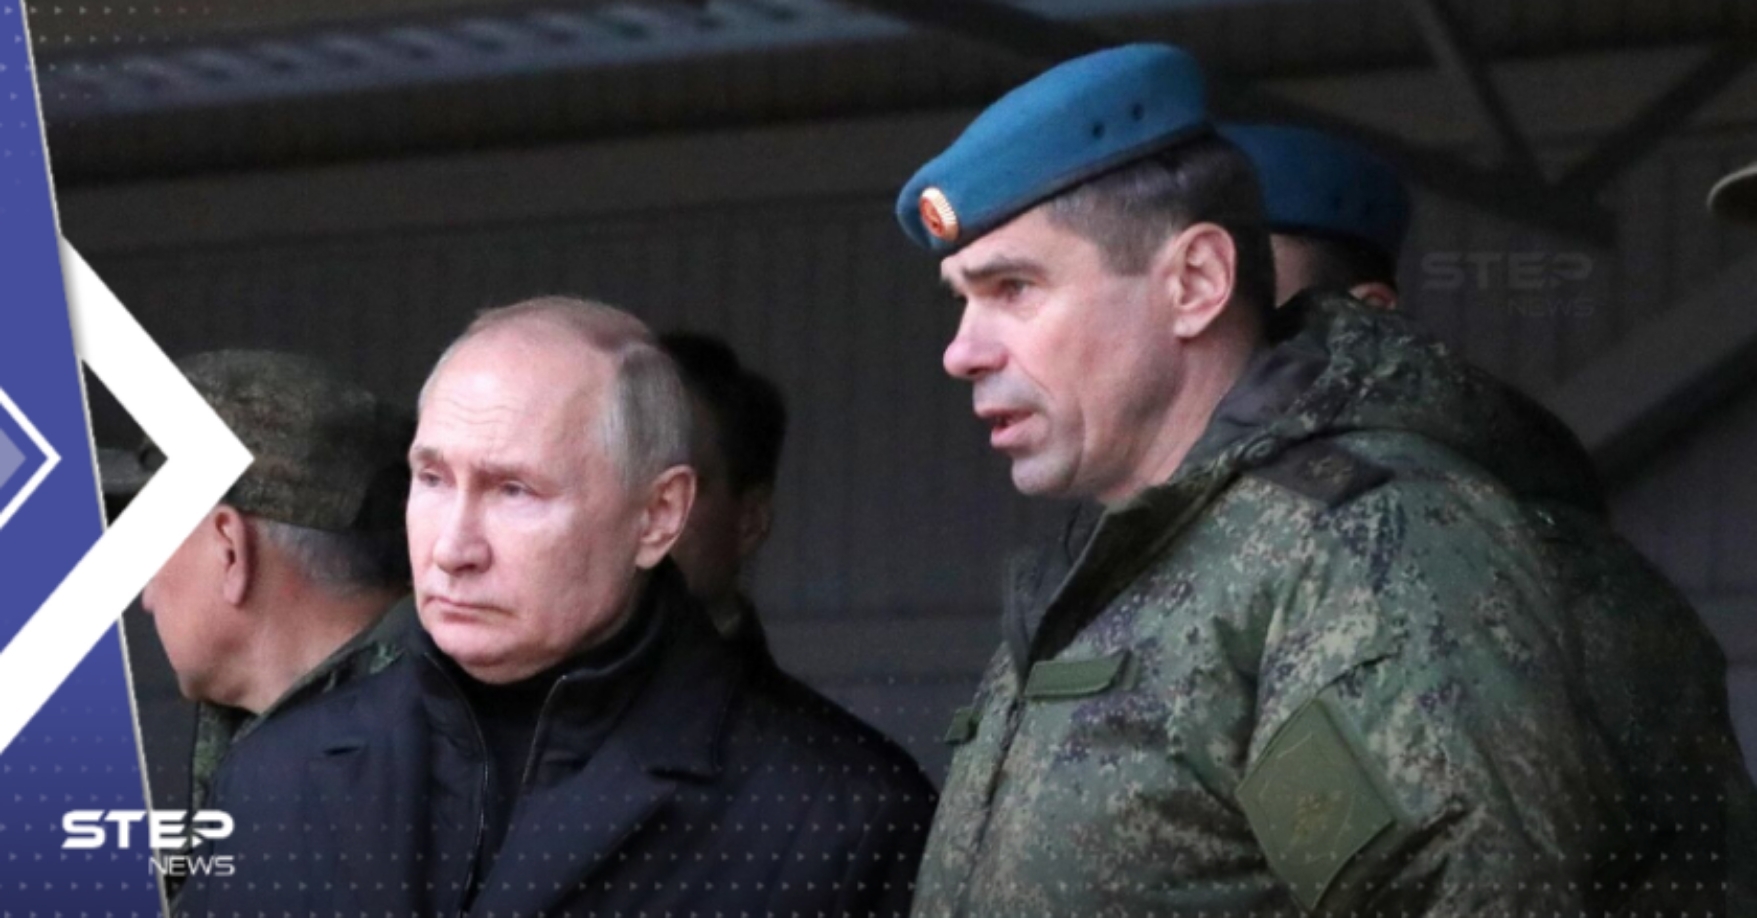 وثائق مسربة تكشف ما تخفيه أجهزة الدولة الروسية عن بوتين حول أوكرانيا